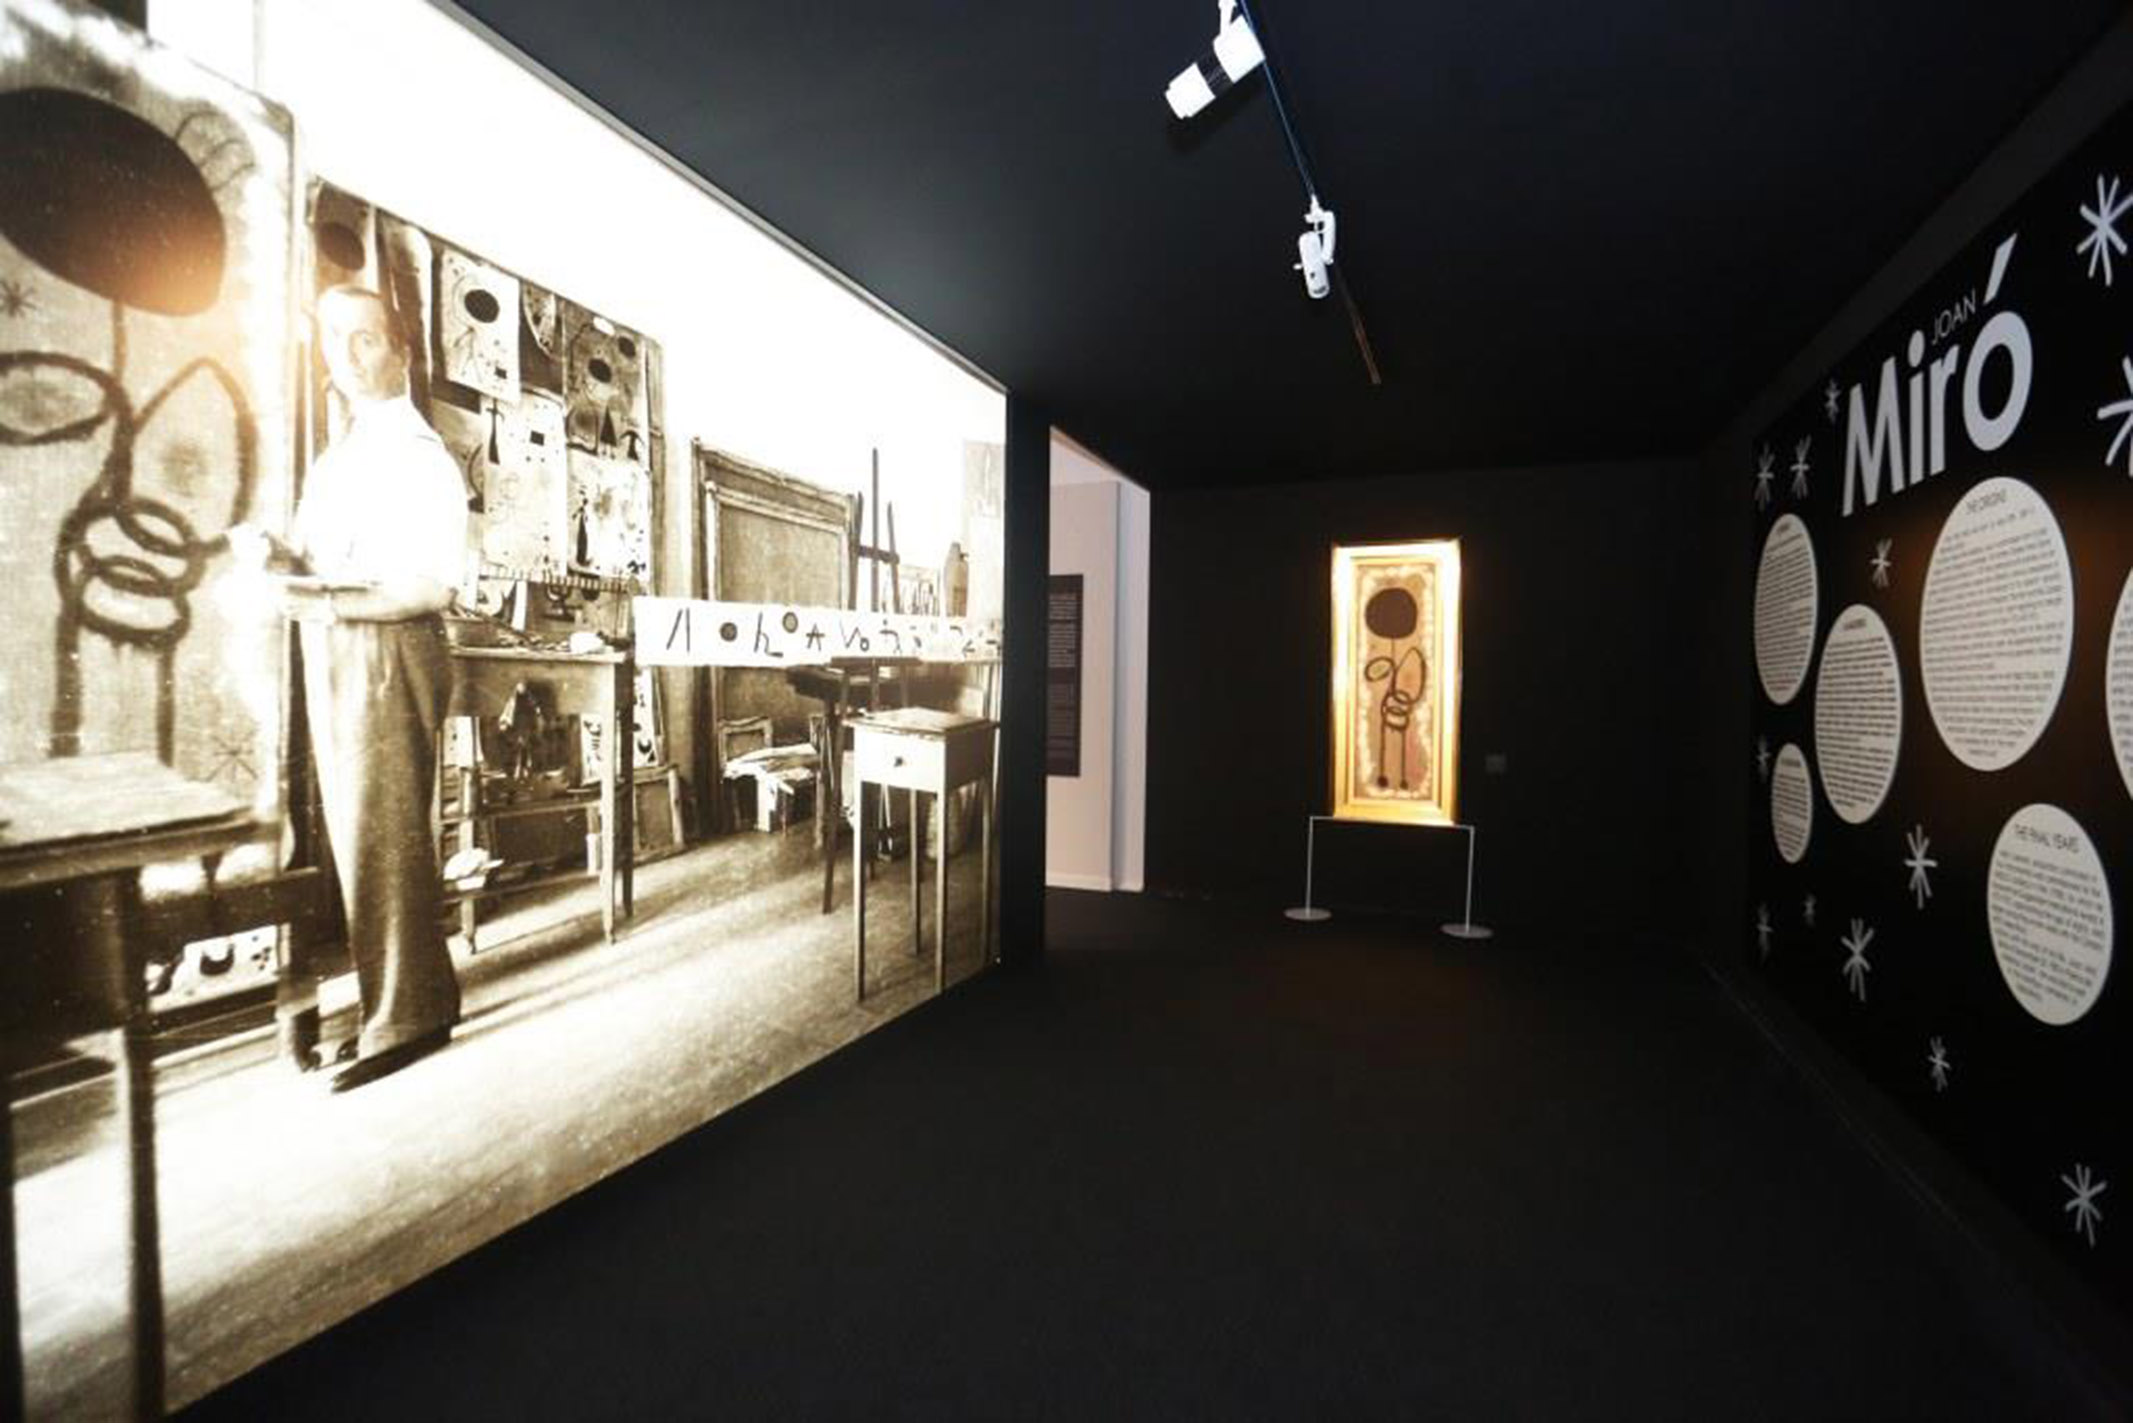 Miró saluta Napoli. Ultimi giorni per visitare, al Pan, la mostra dedicata all’artista catalano